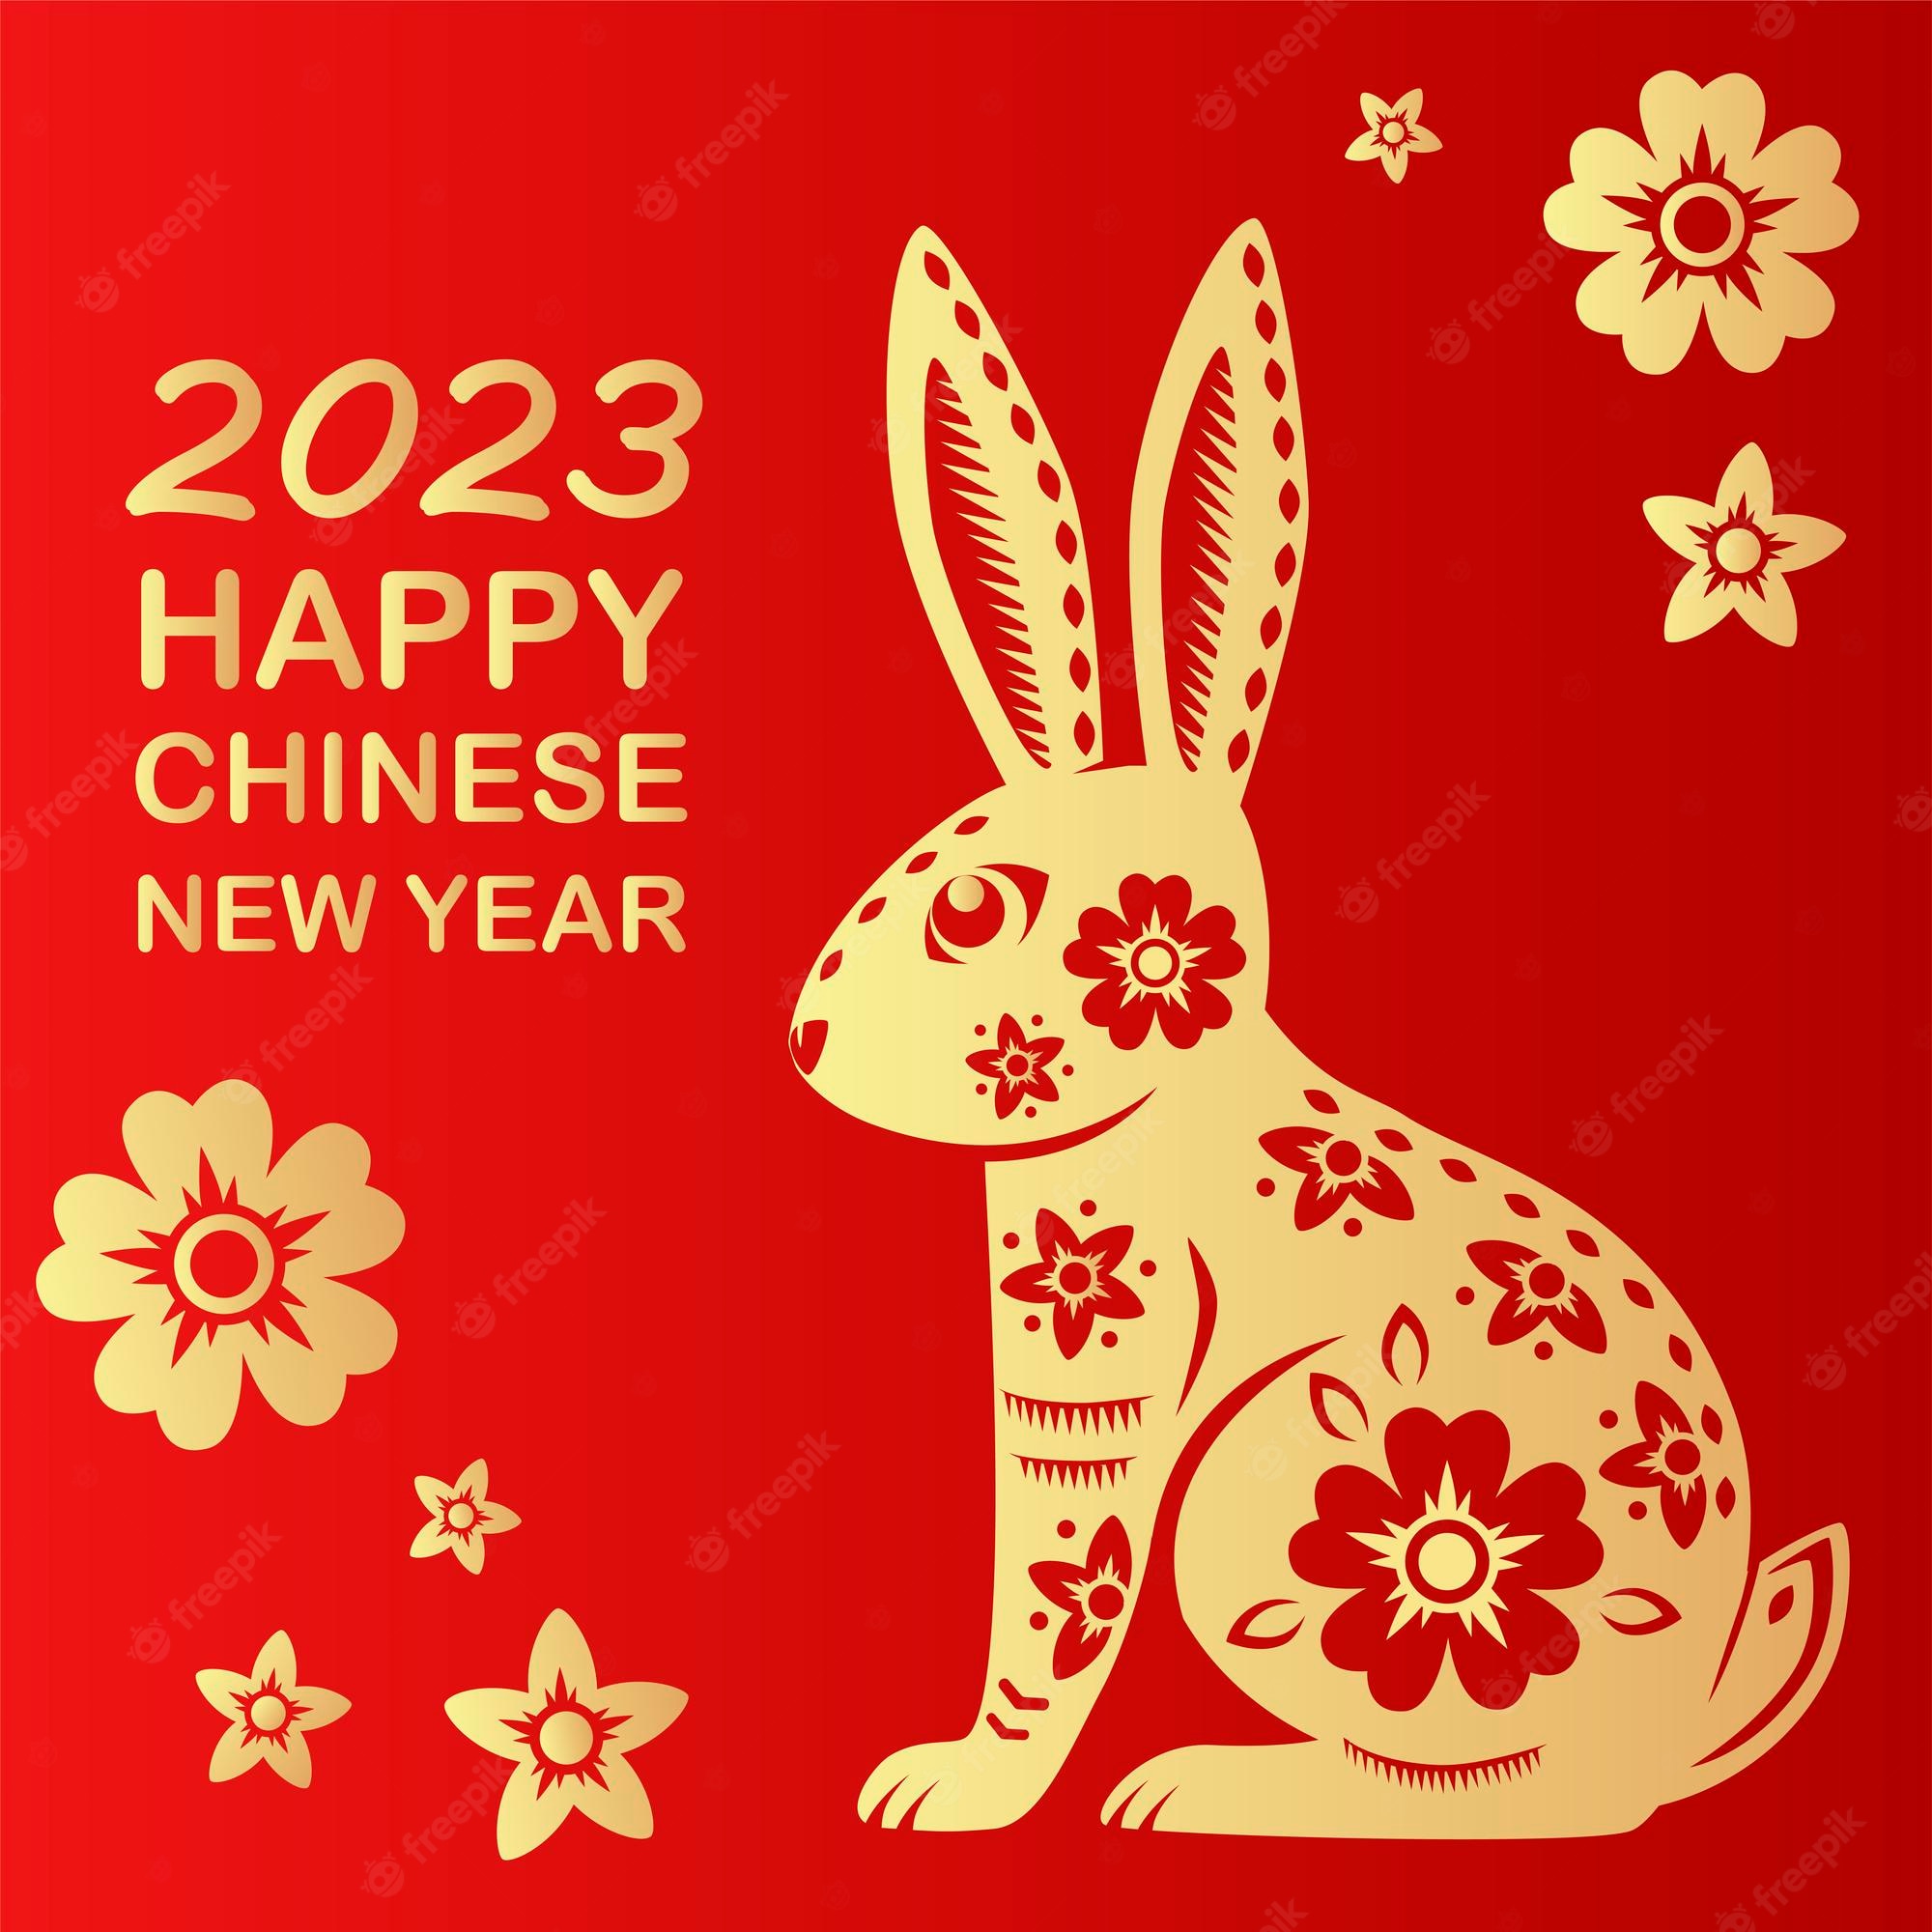 שנה סינית חדשה שמחה!